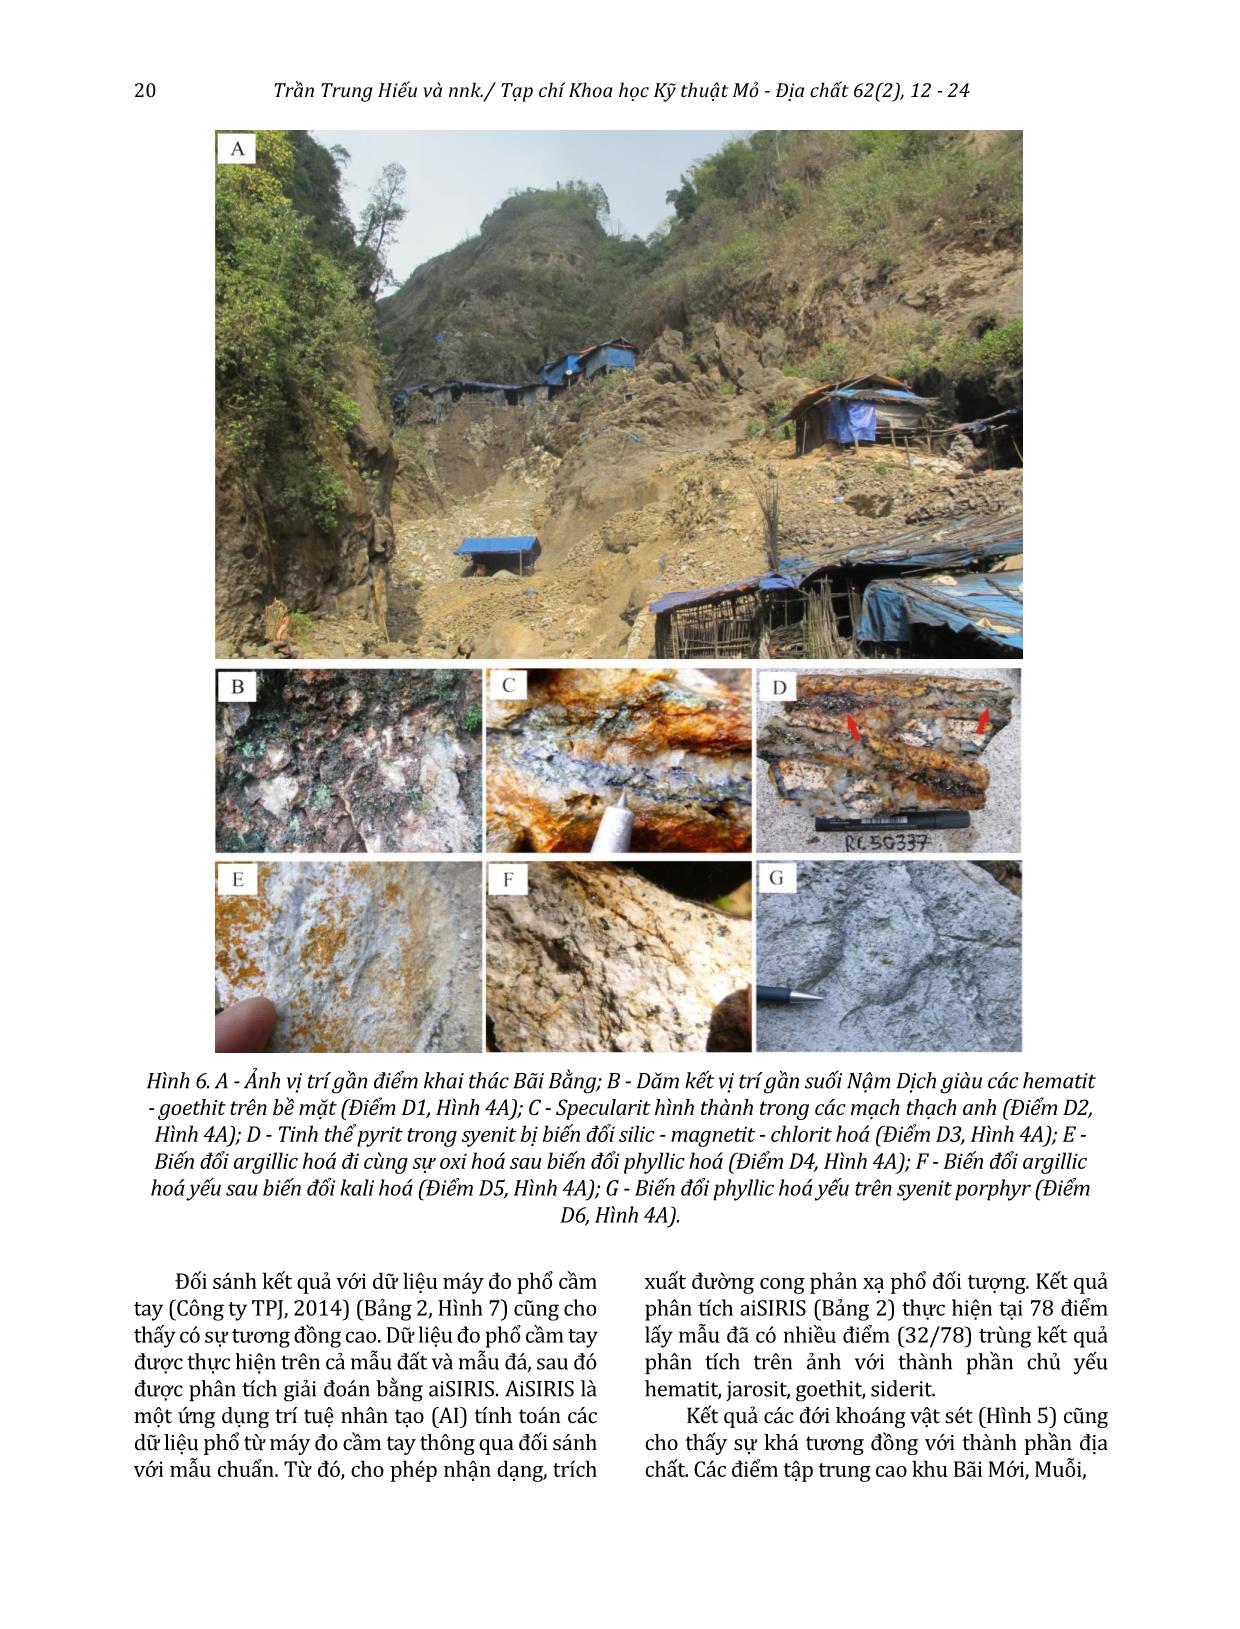 Xác định các đới biến đổi giàu khoáng vật sét và oxit sắt sử dụng ảnh Landsat 8 khu vực Pu Sam Cáp, Lai Châu trang 9